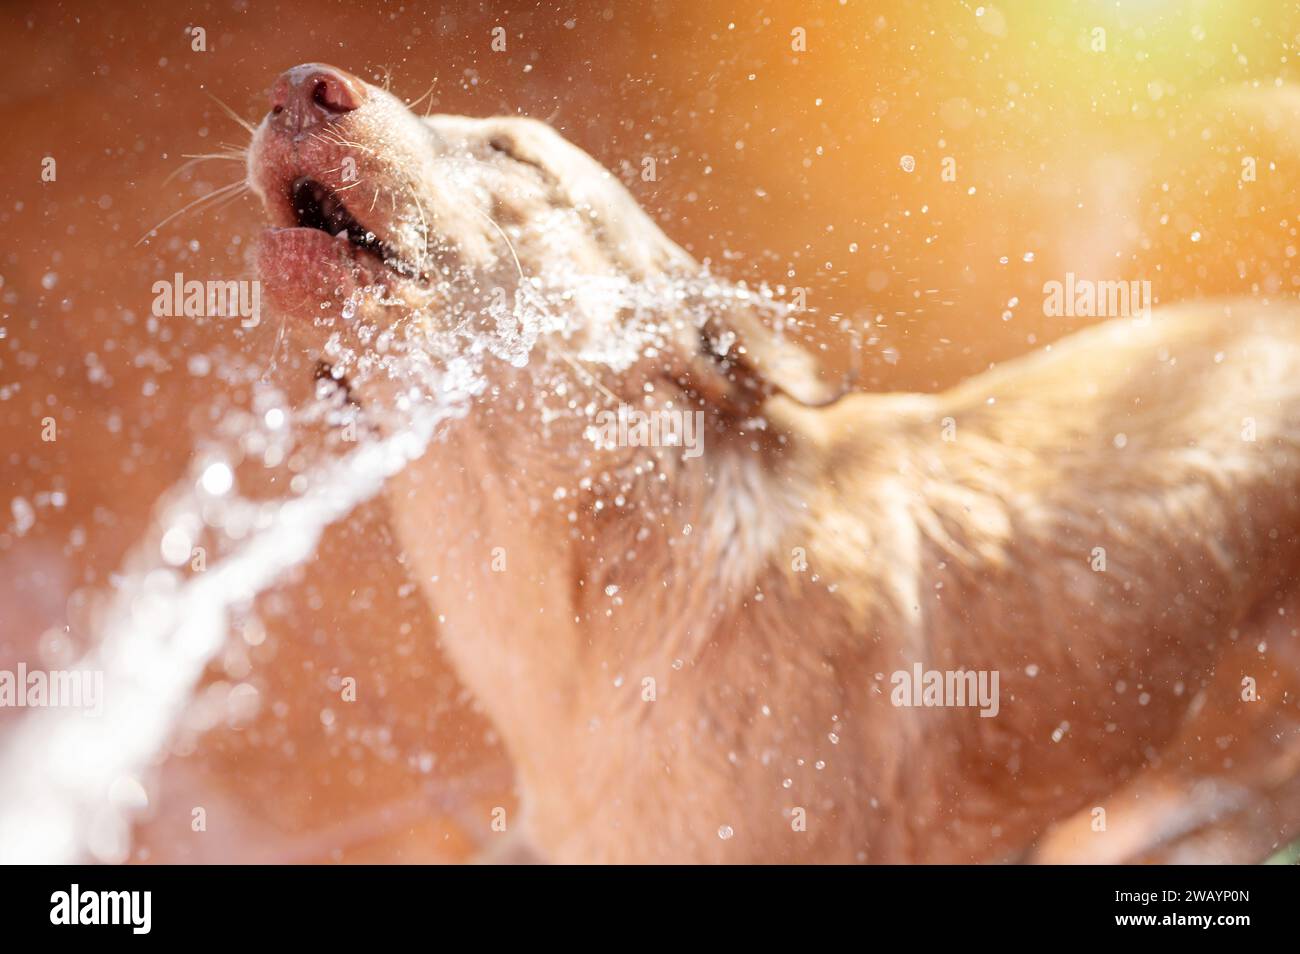 Ritratto di un cane labrador in acqua con uno sfondo luminoso e soleggiato Foto Stock